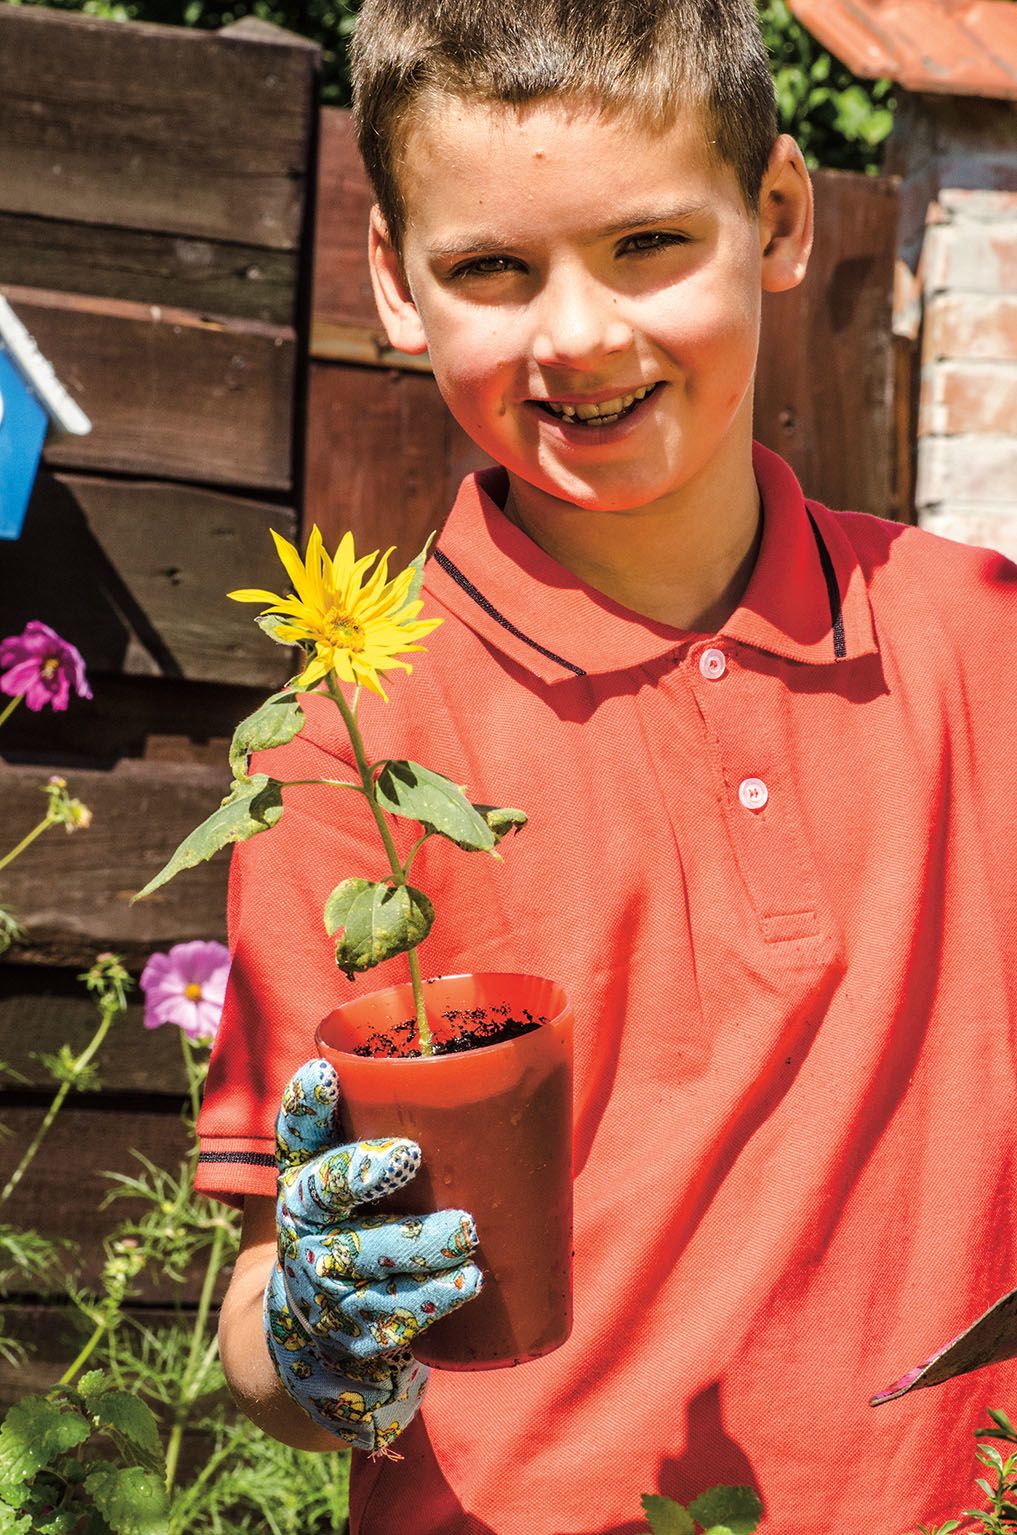 Slunečnice jsou často první rostlinou, terou si děti samy vypěstují. Líbí se jim rychlý růst i zářivé květy.